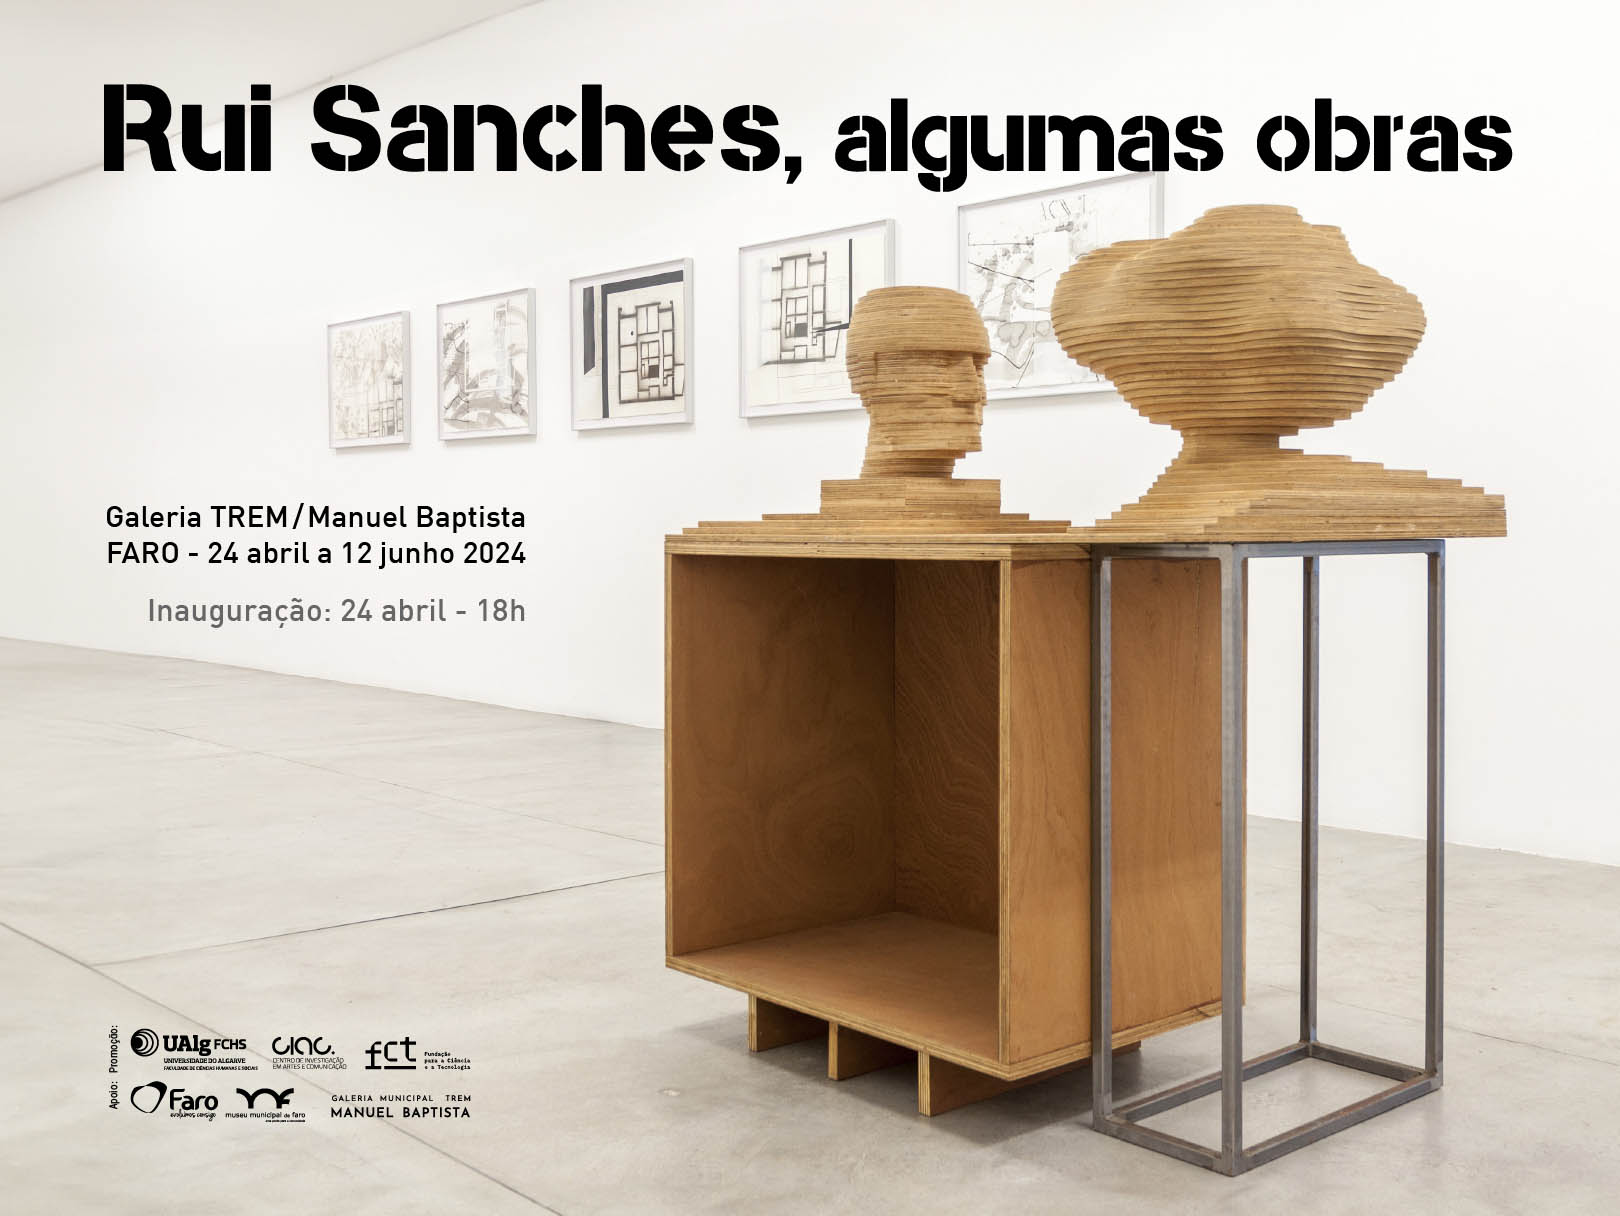 CIAC e Curso de Artes Visuais organizam tributo a Rui Sanches